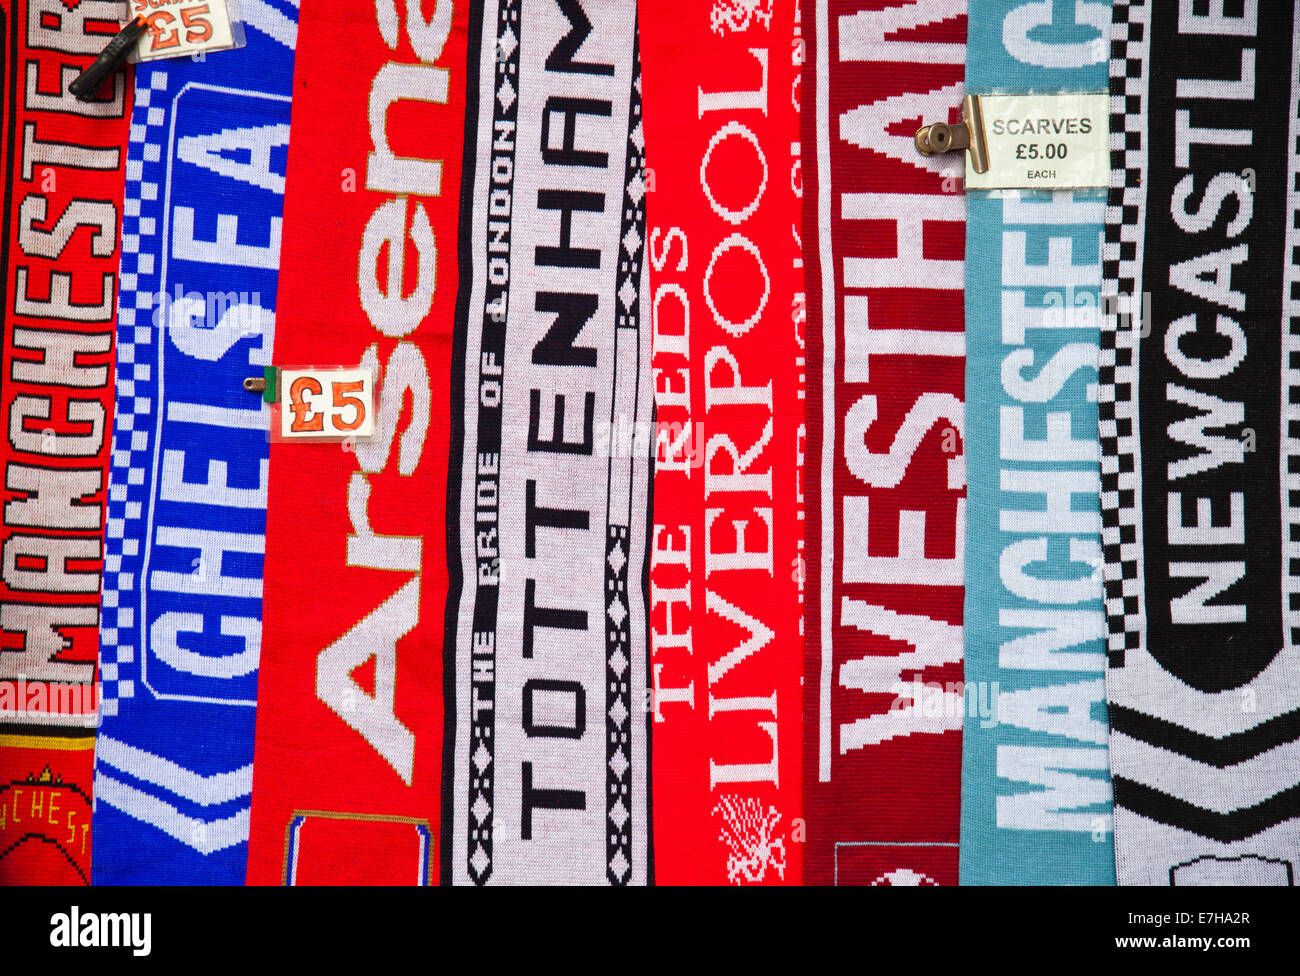 átomo rasguño Efectivamente Equipo de fútbol inglés bufandas Fotografía de stock - Alamy